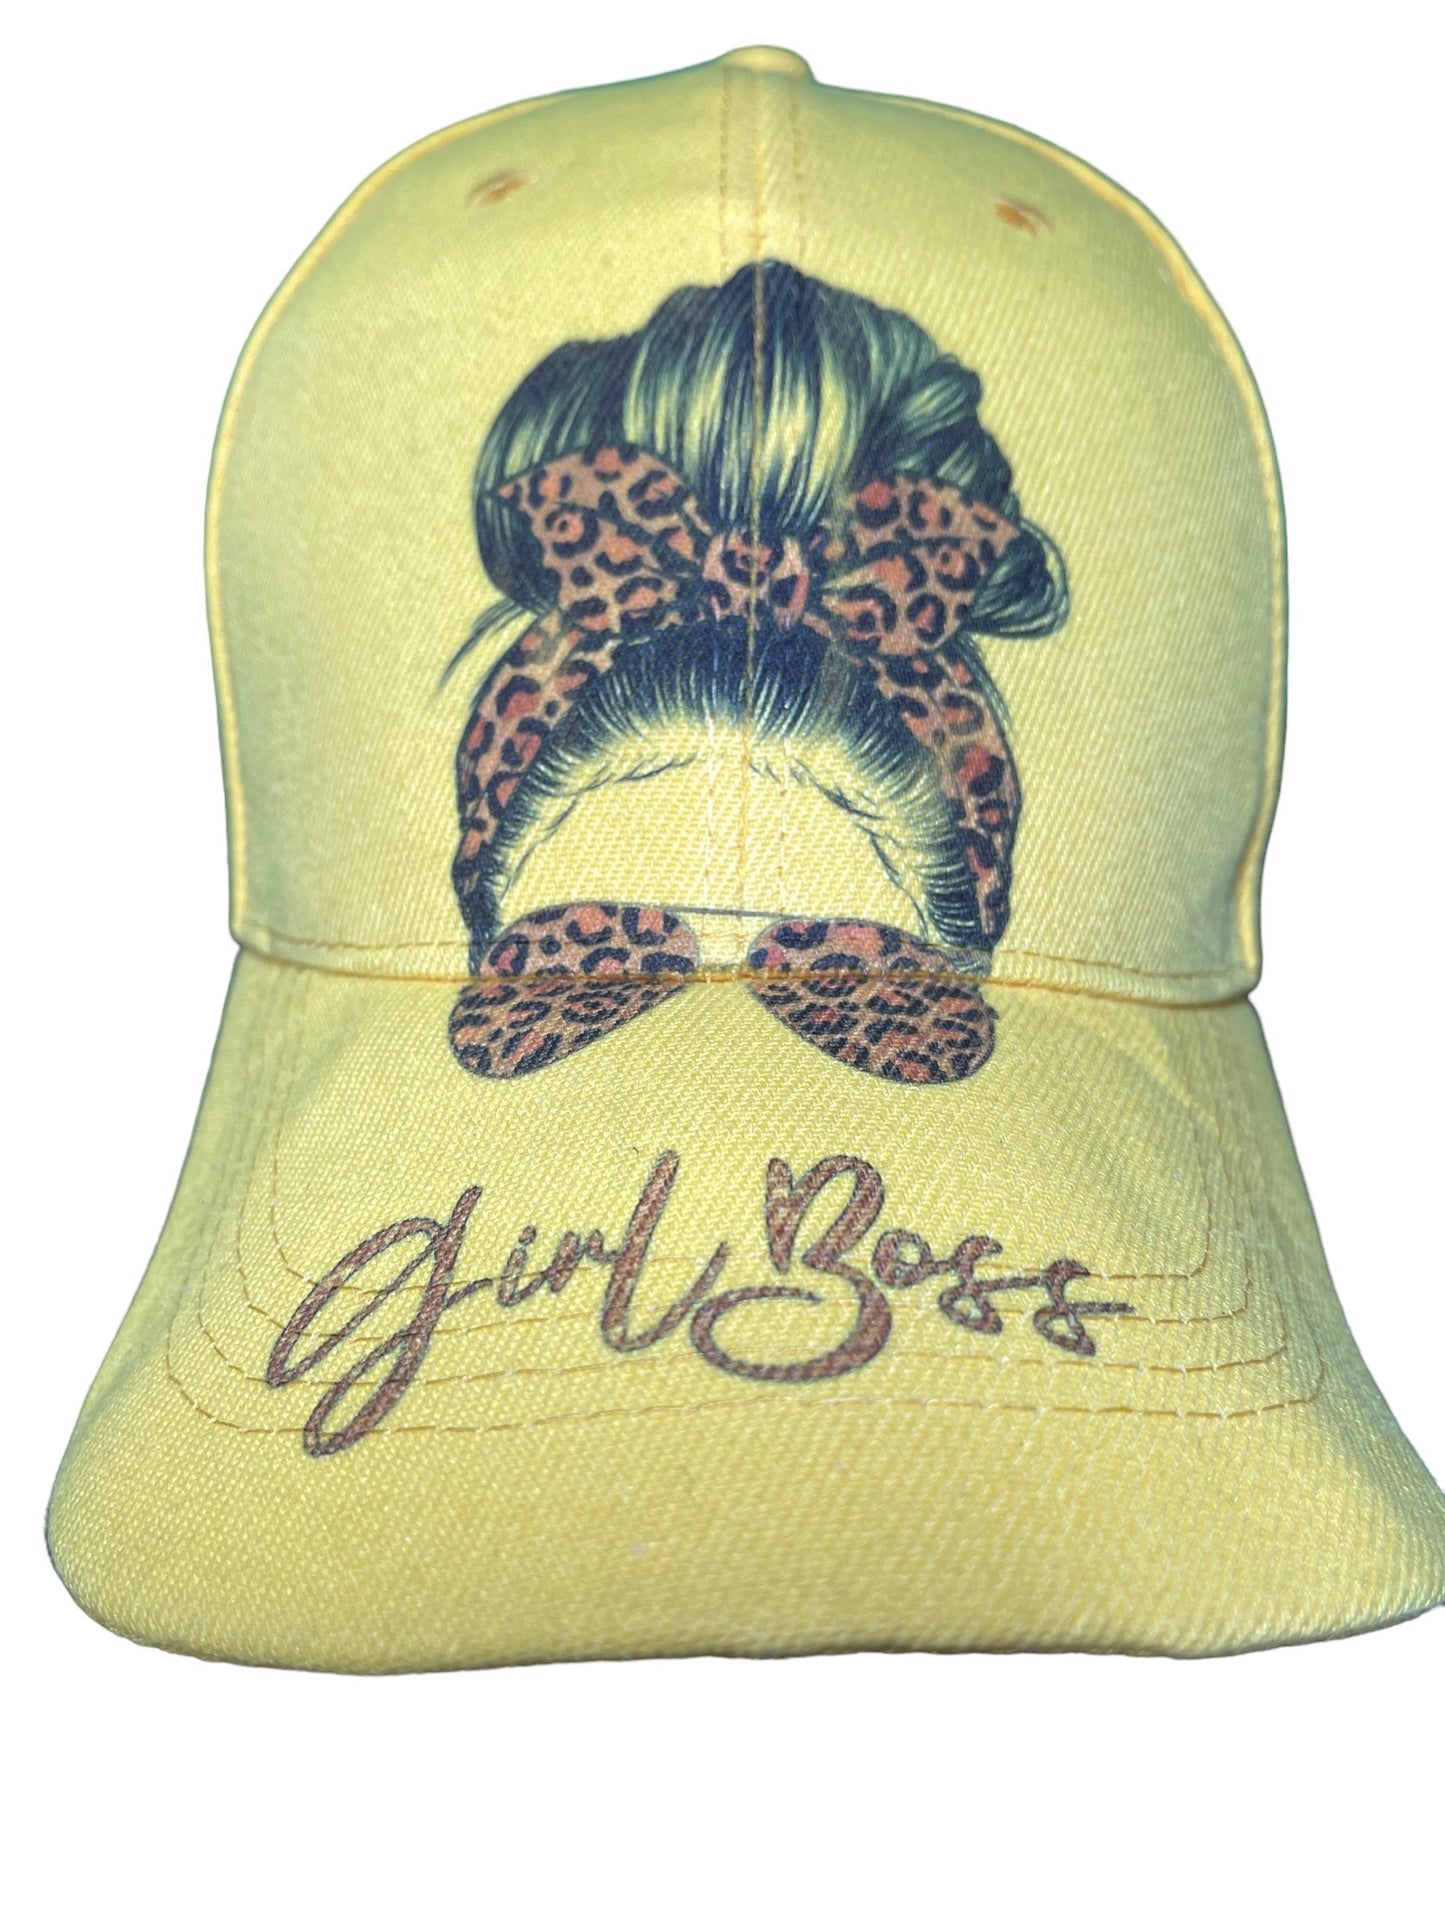 Girl Boss Trucker Hat